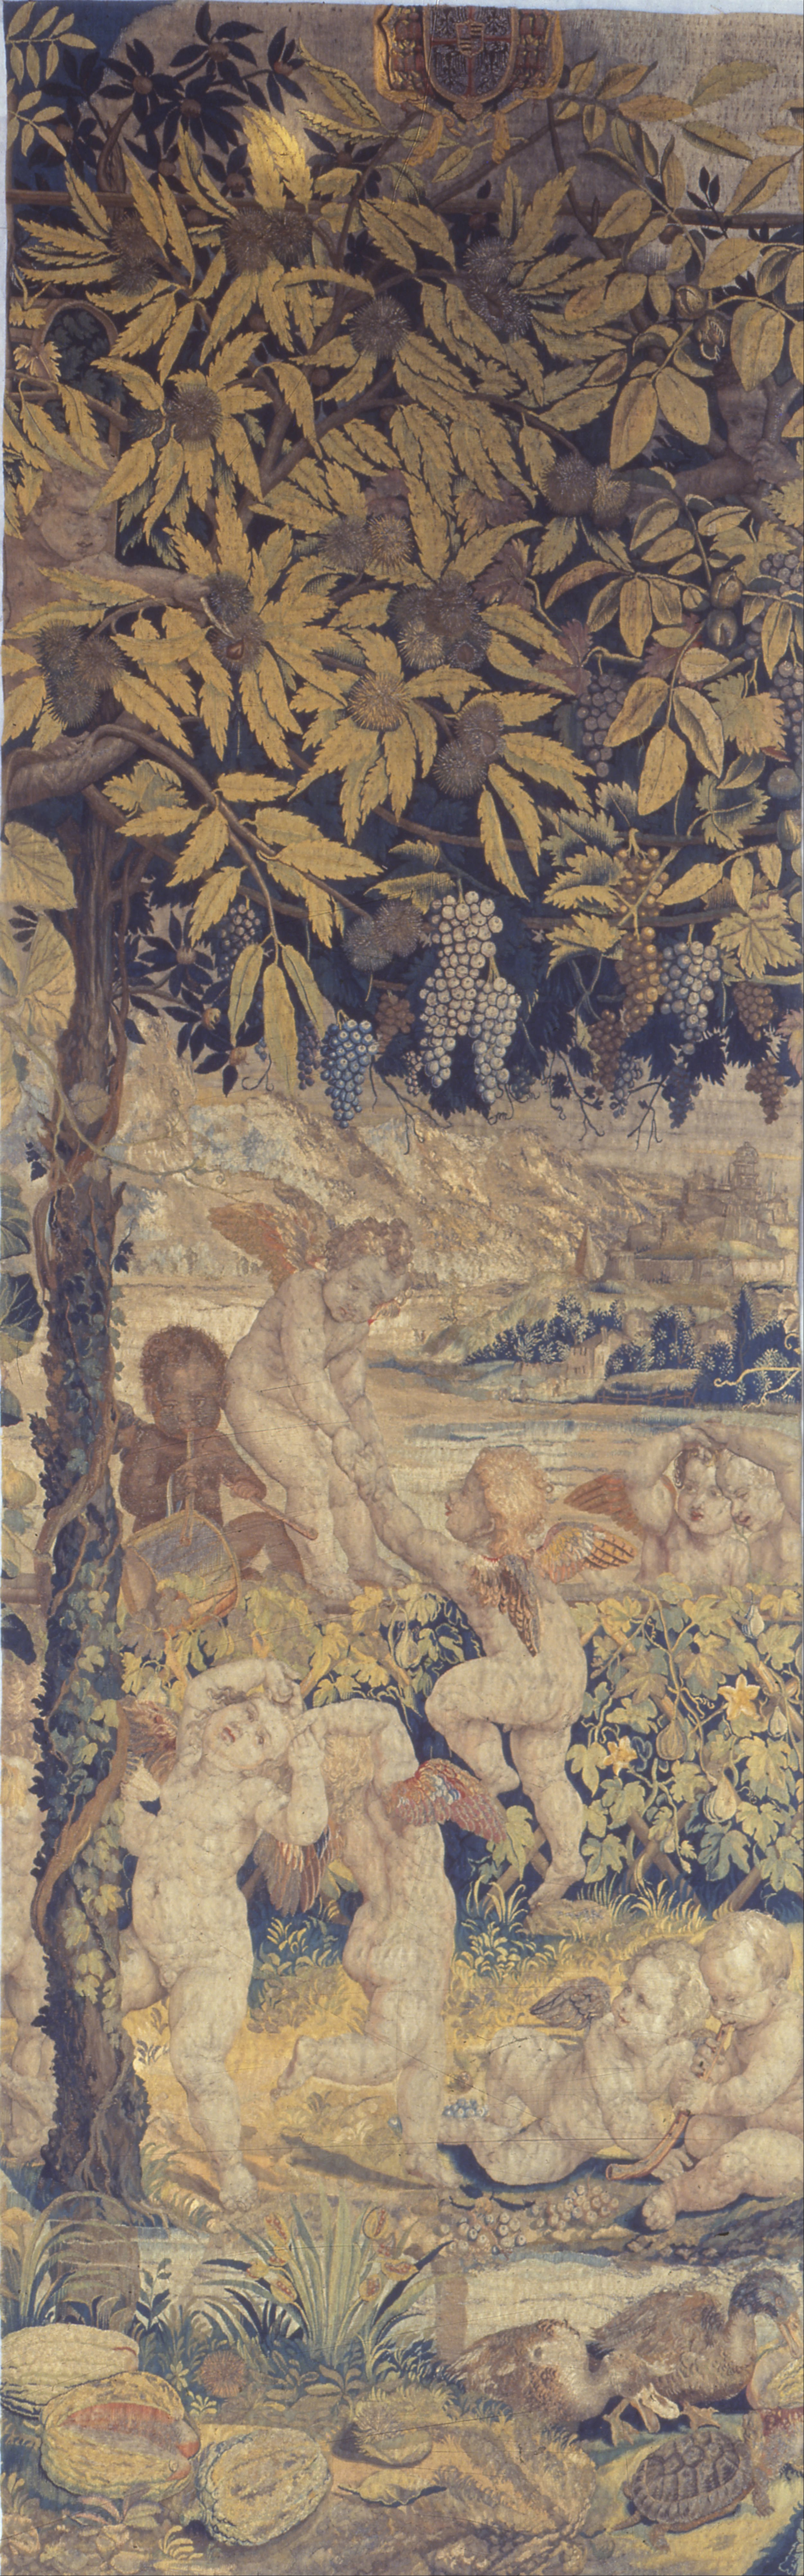 Tapisserie aux putti jouant by Giulio Romano - 1540 - 1545 Museo Poldi Pezzoli